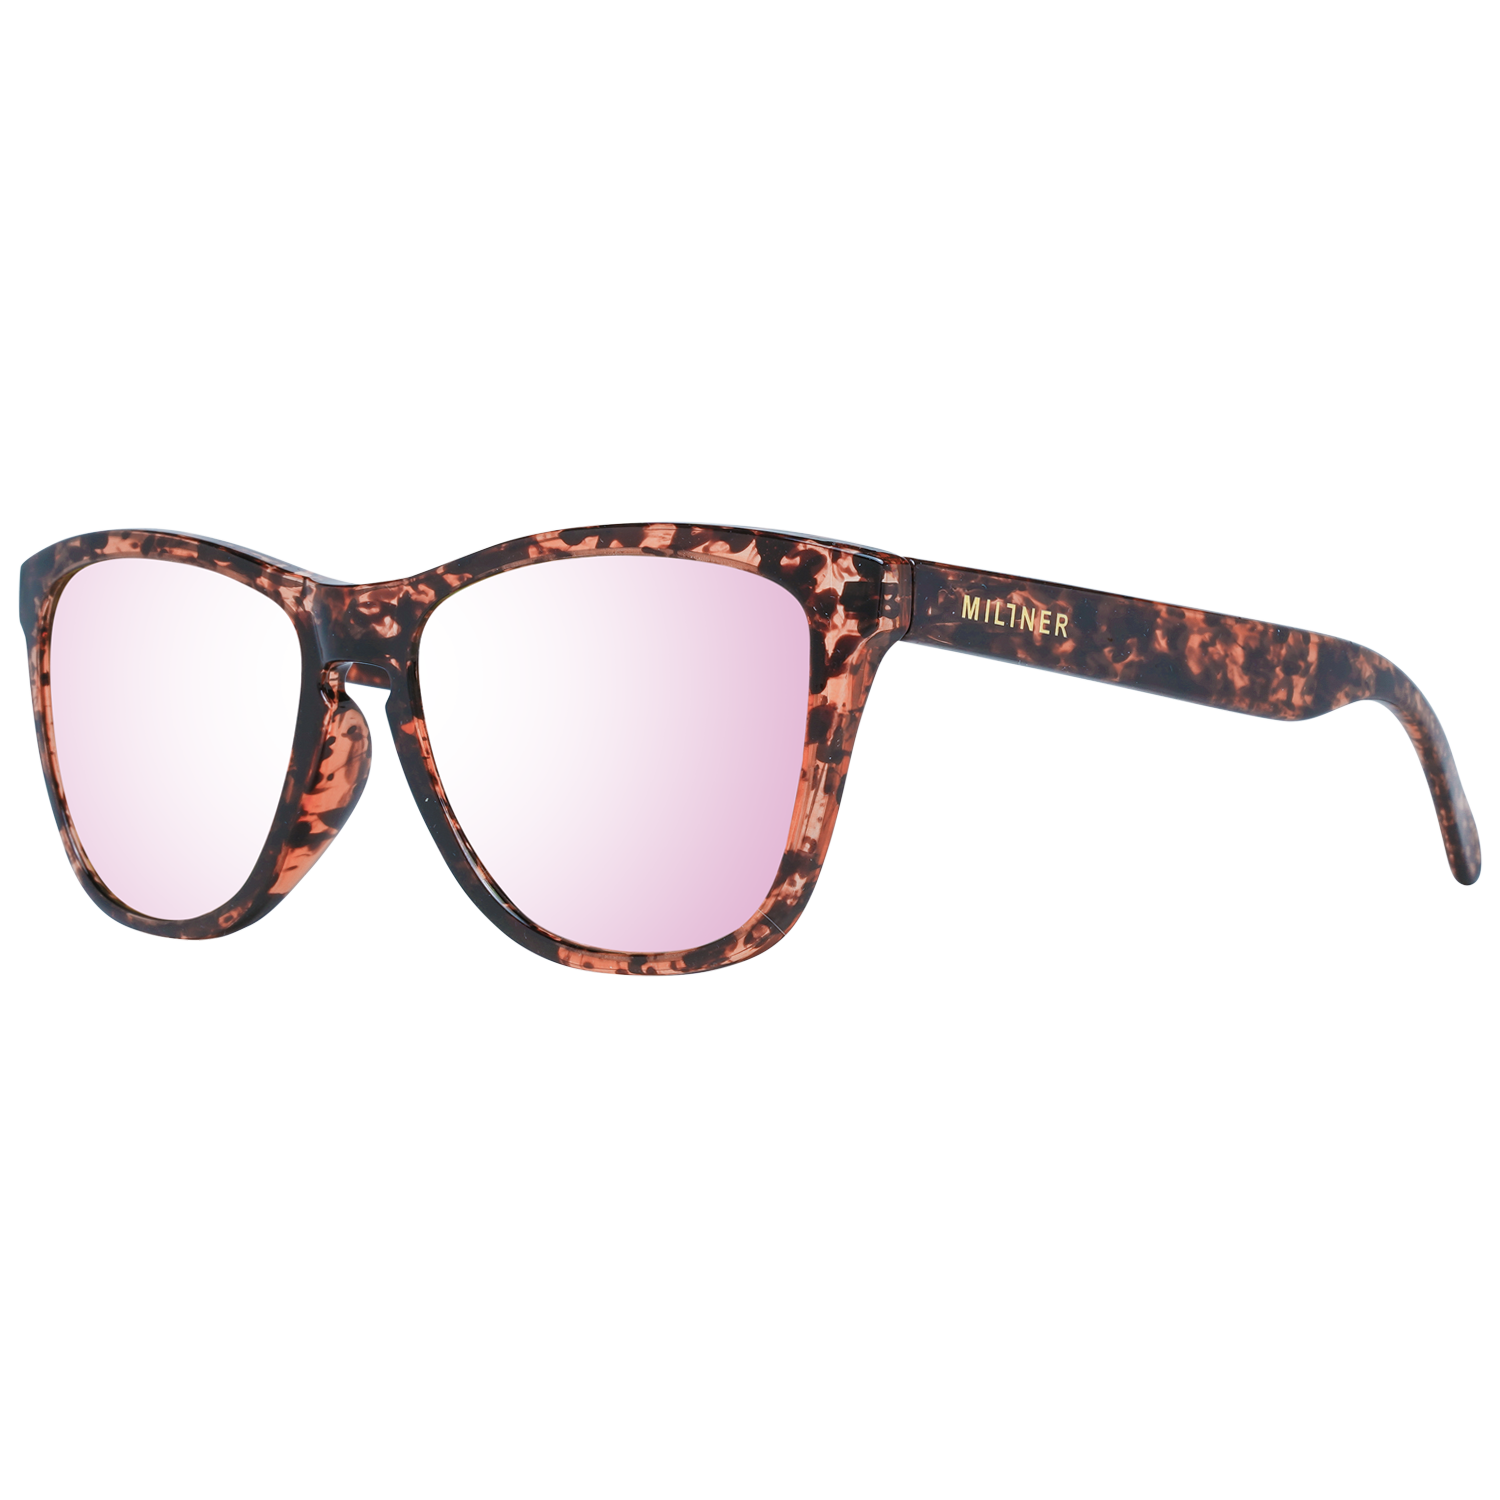 Millner Sunglasses Millner Sunglasses 0020904 Bond Eyeglasses Eyewear UK USA Australia 